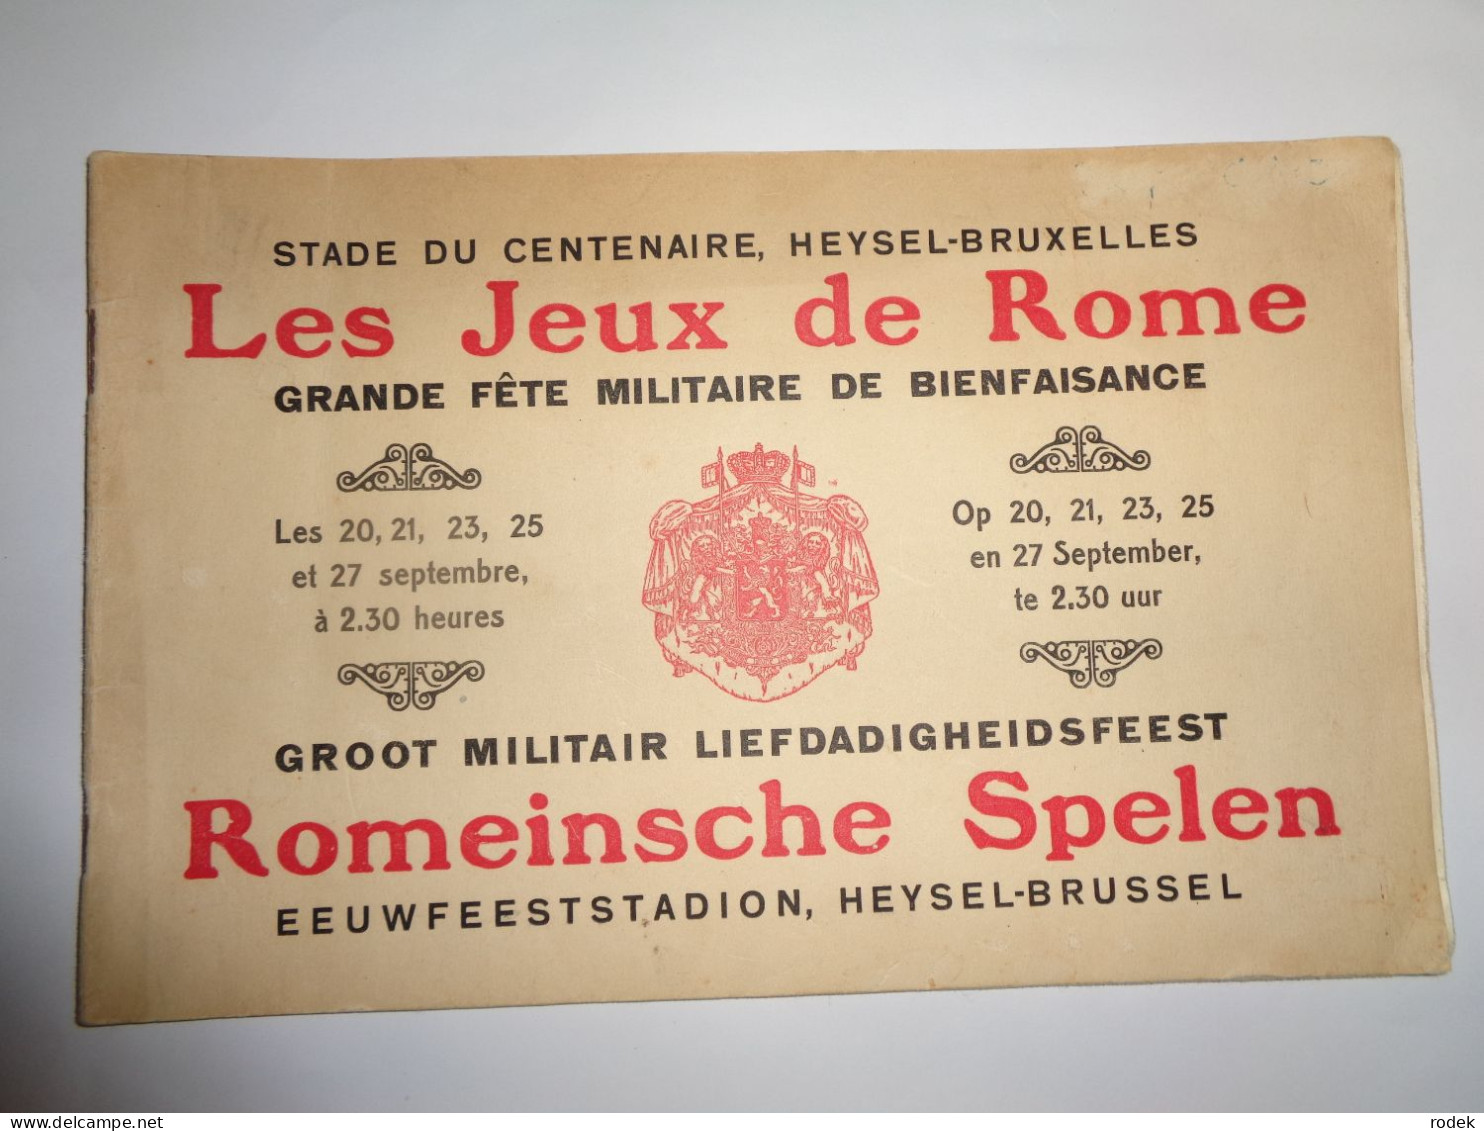 Groot Militair Liefdadigheidsfeest Romeinsche Spelen Eeuwfeeststadion 1930 - Programs